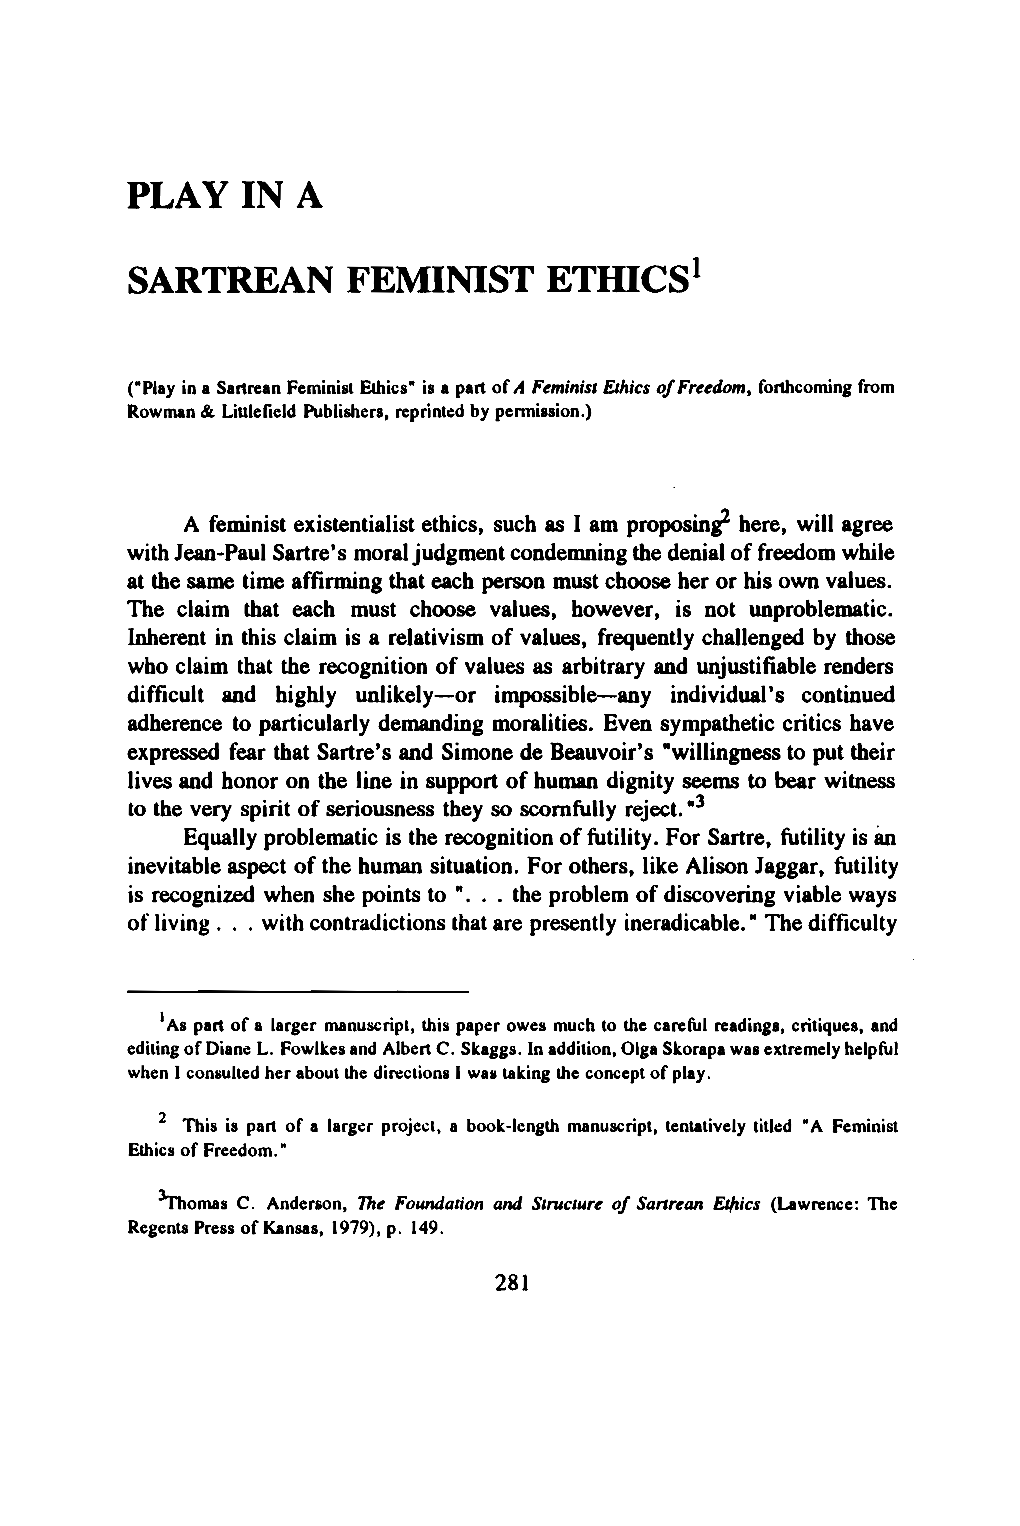 Play in a Sartrean Feminist Etidcs